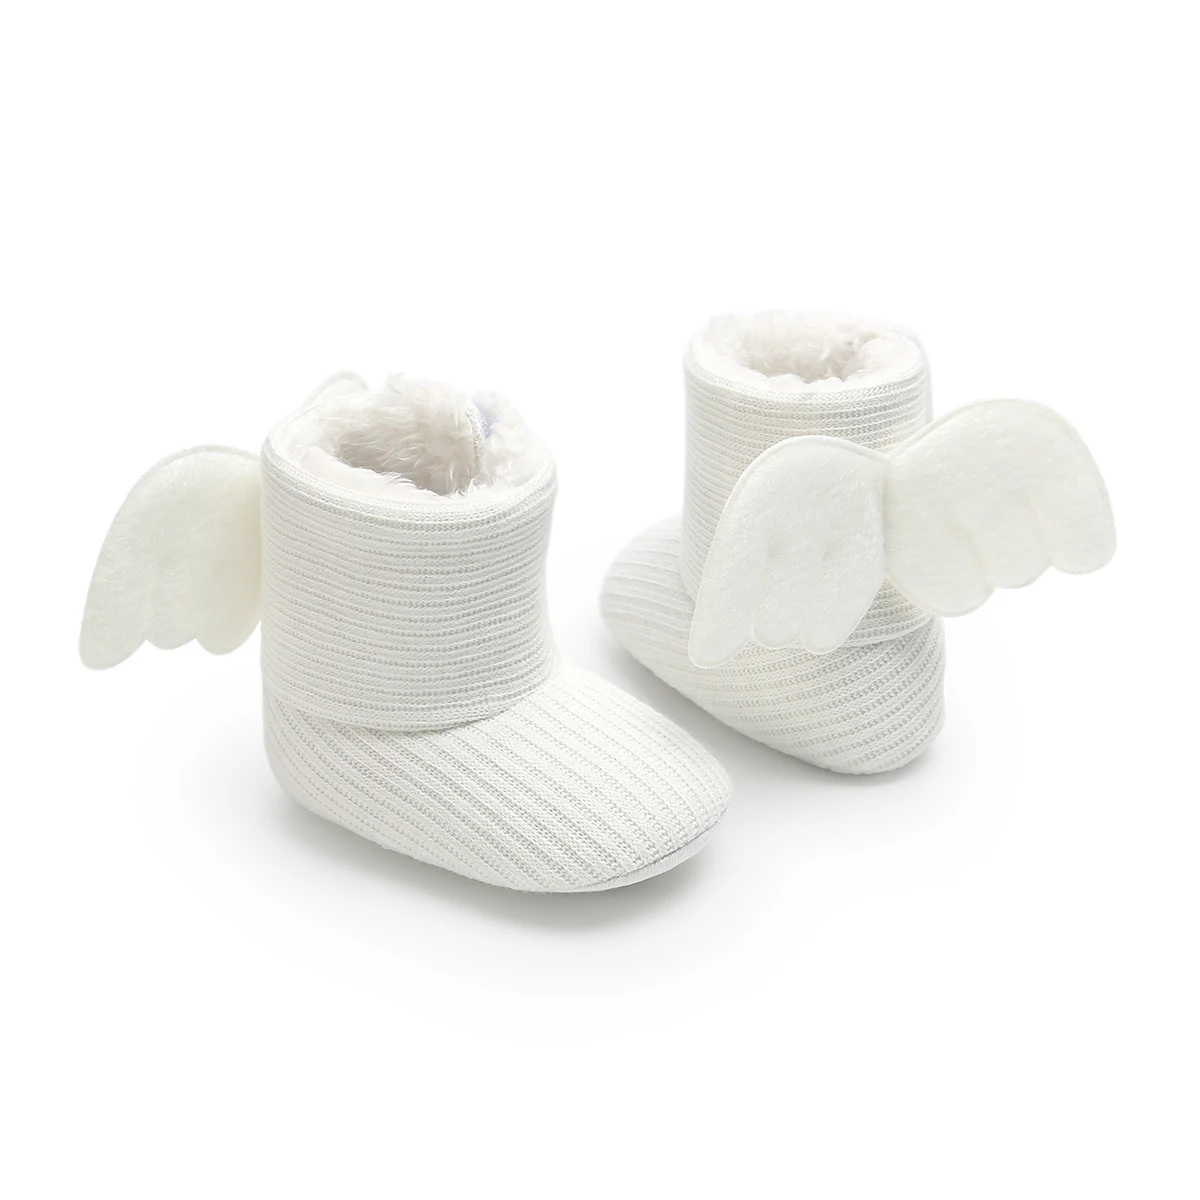 Мягкие Зимние ботиночки для малышей, носки для новорожденных, теплые подарки, милые детские ботиночки для малышей, милые ботиночки для маленьких детей с крылышками, для 0-18 месяцев - Цвет: Белый